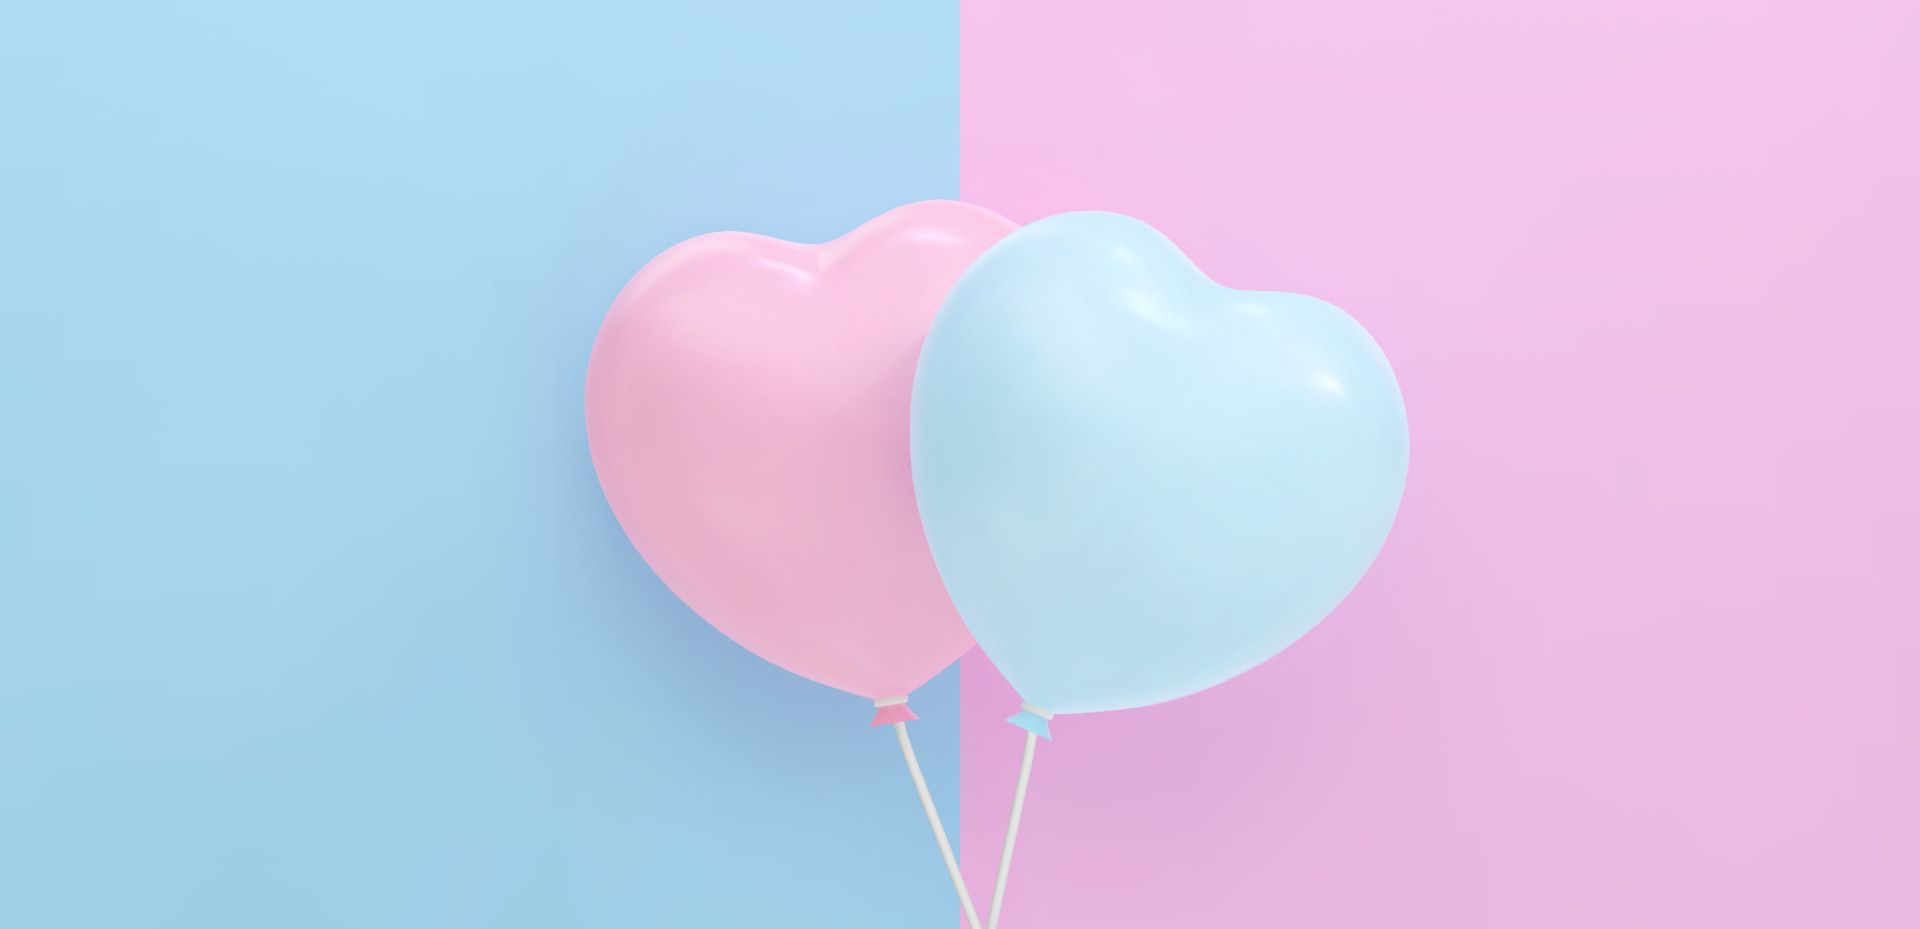  Luftballons Hintergrundbild 1920x929. Blumenstrauß, Haufen realistischer rosa und blauer Luftballons, die fliegen. vektorillustration für karte, babydusche, geschlecht enthüllen partyeinladung, design, flyer, plakat, dekor, banner, web, werbung 11001518 Vektor Kunst bei Vecteezy